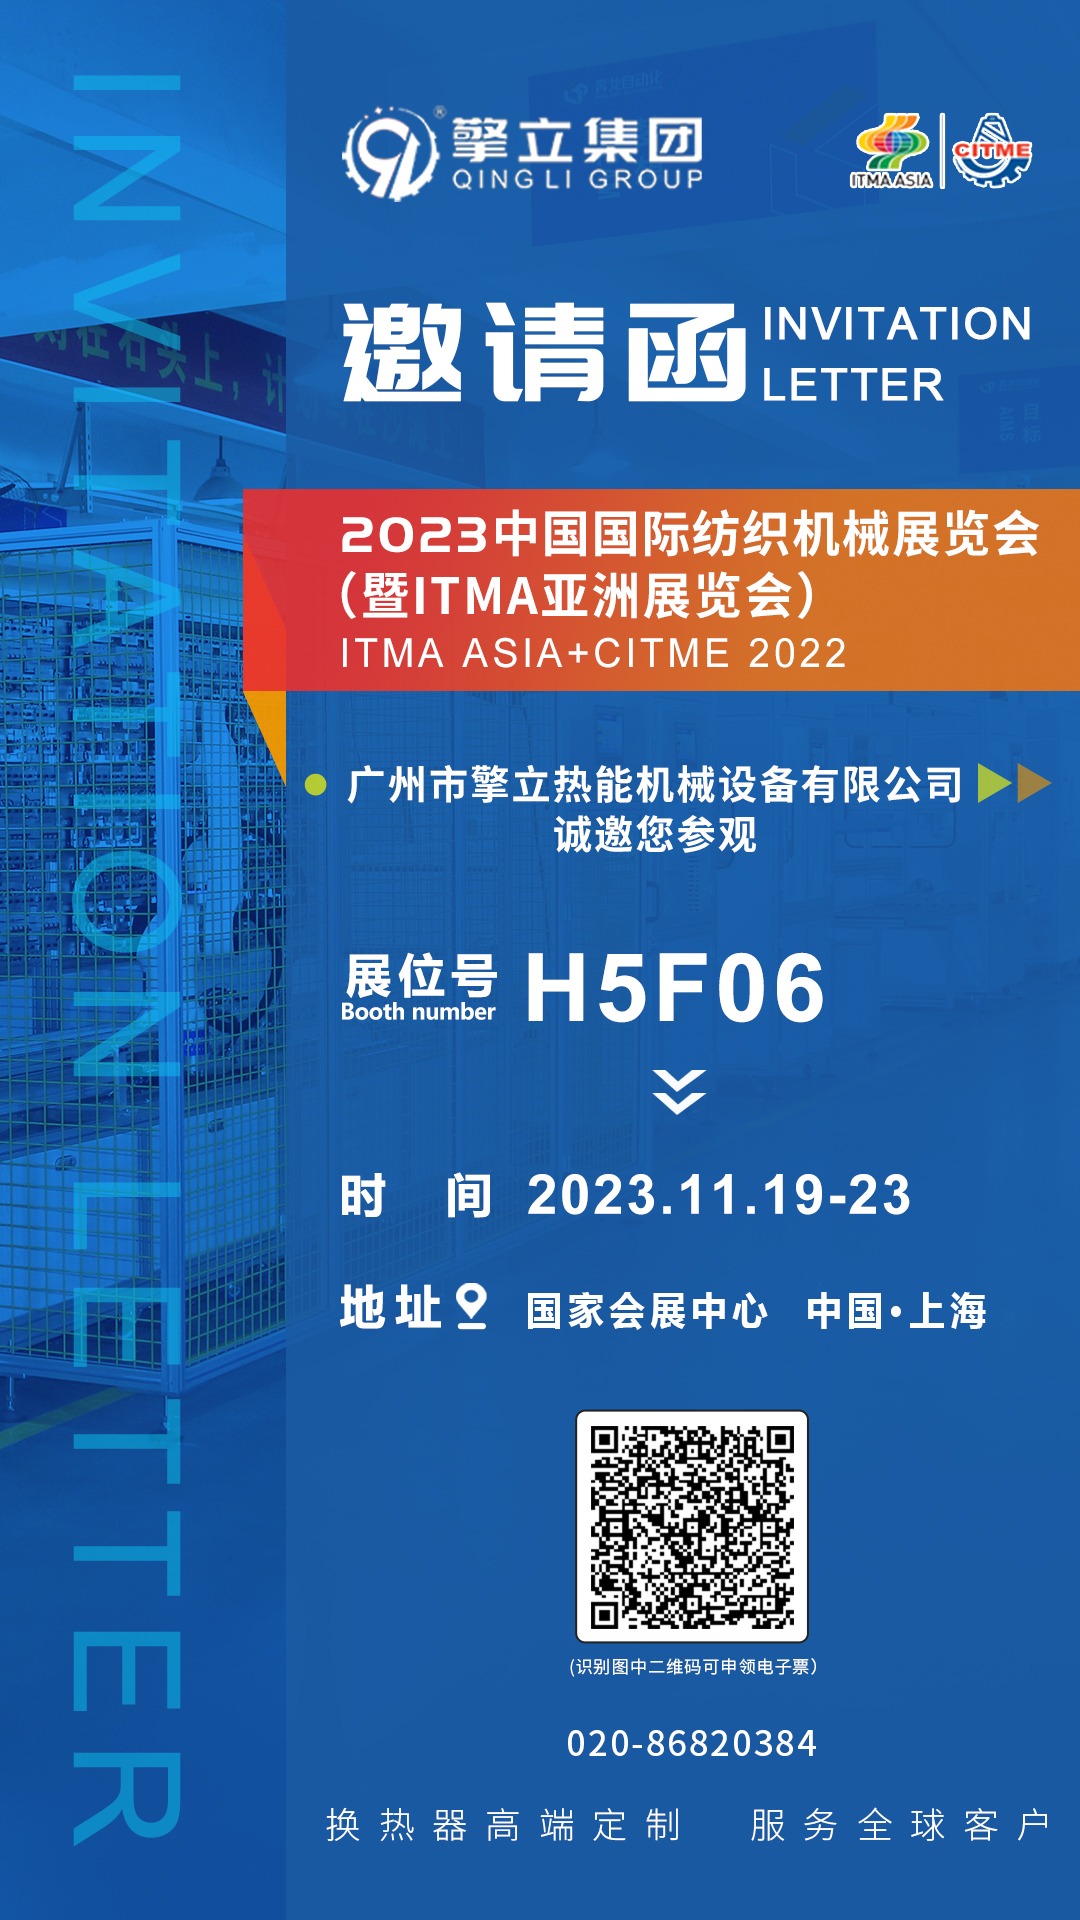 擎立集团邀您参加2023中国国际纺织机械展览会暨ITMA亚洲展览会